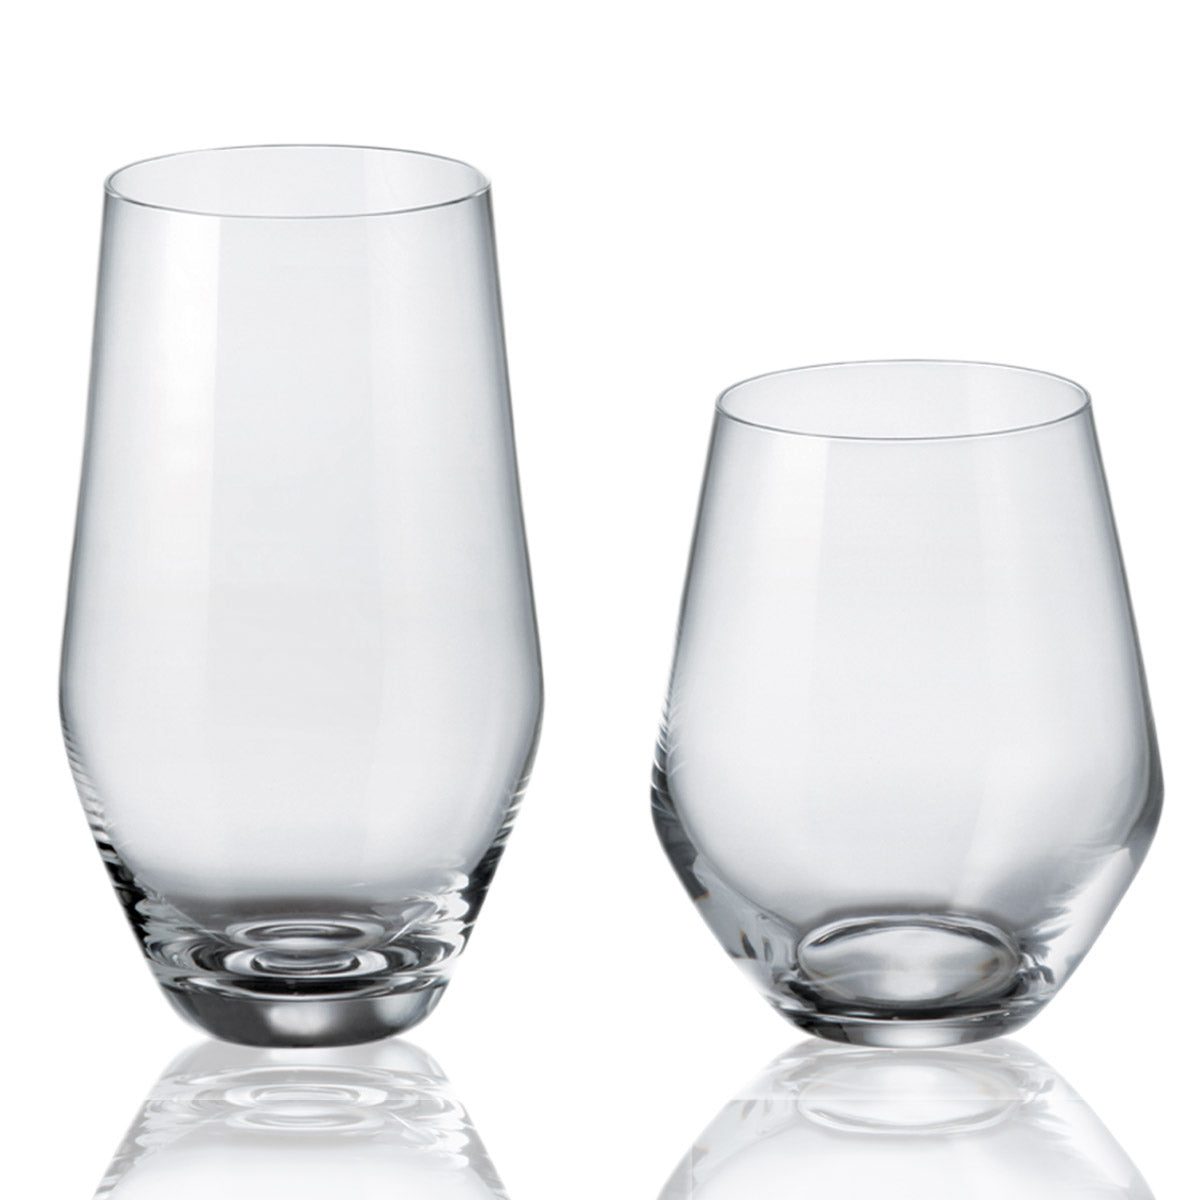 Servizio di bicchieri da degustazione moderno dal design lineare - Michelle